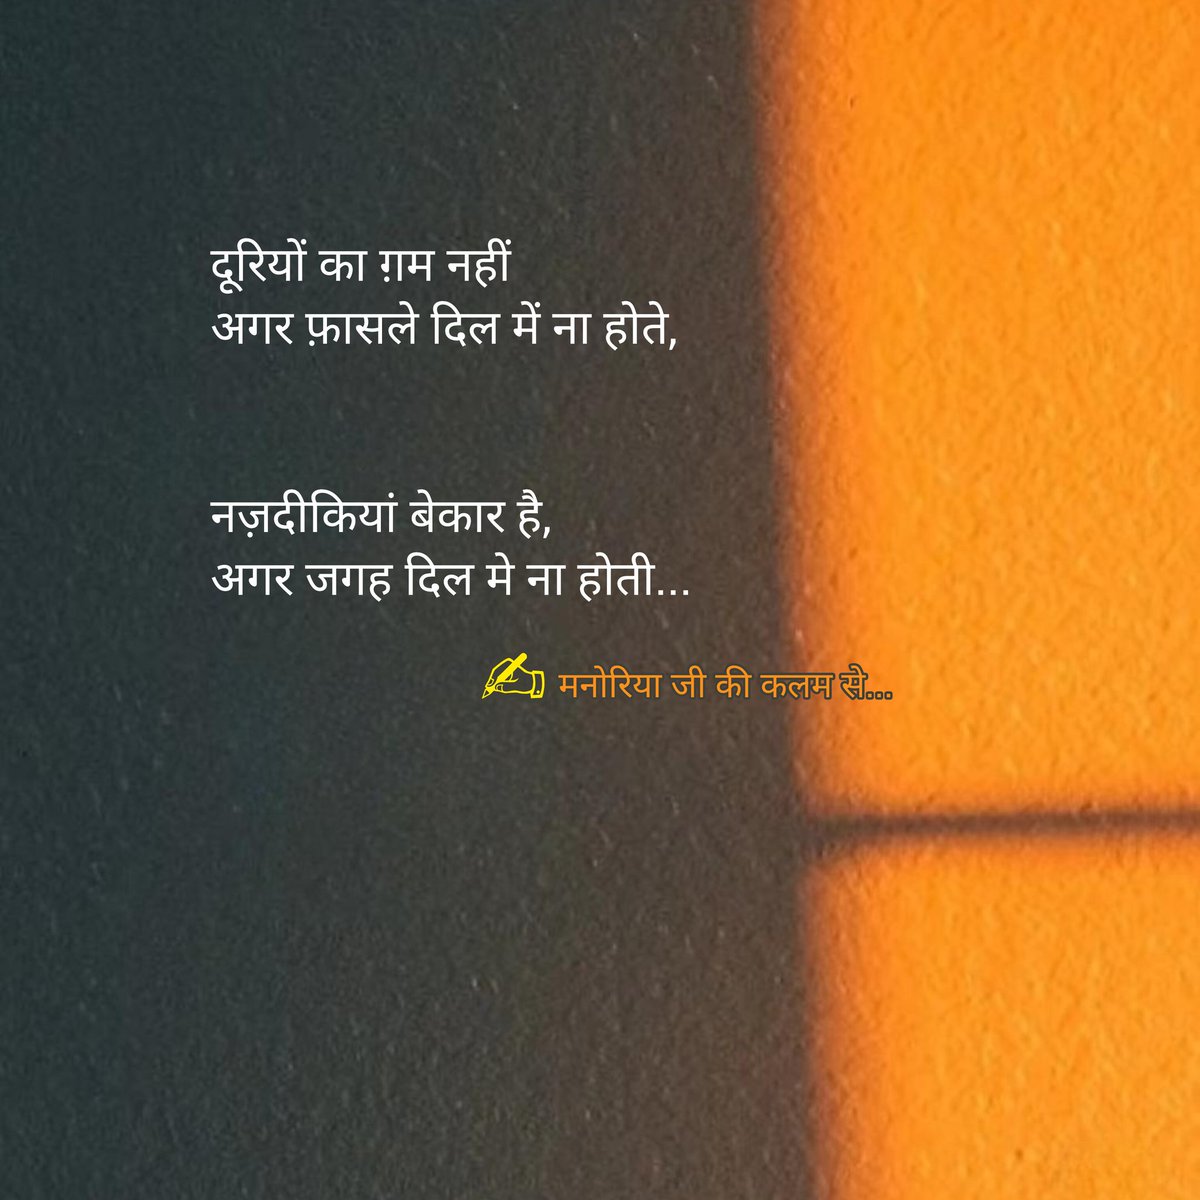 ✍️ Shayari
#Shayari #hindishayari #poetrylovers #sadshayari #mohabbat #shayarilover #quotes #ishq #shayar #love #shayaries #hindi #ghazal #hindiquotes #loveshayari